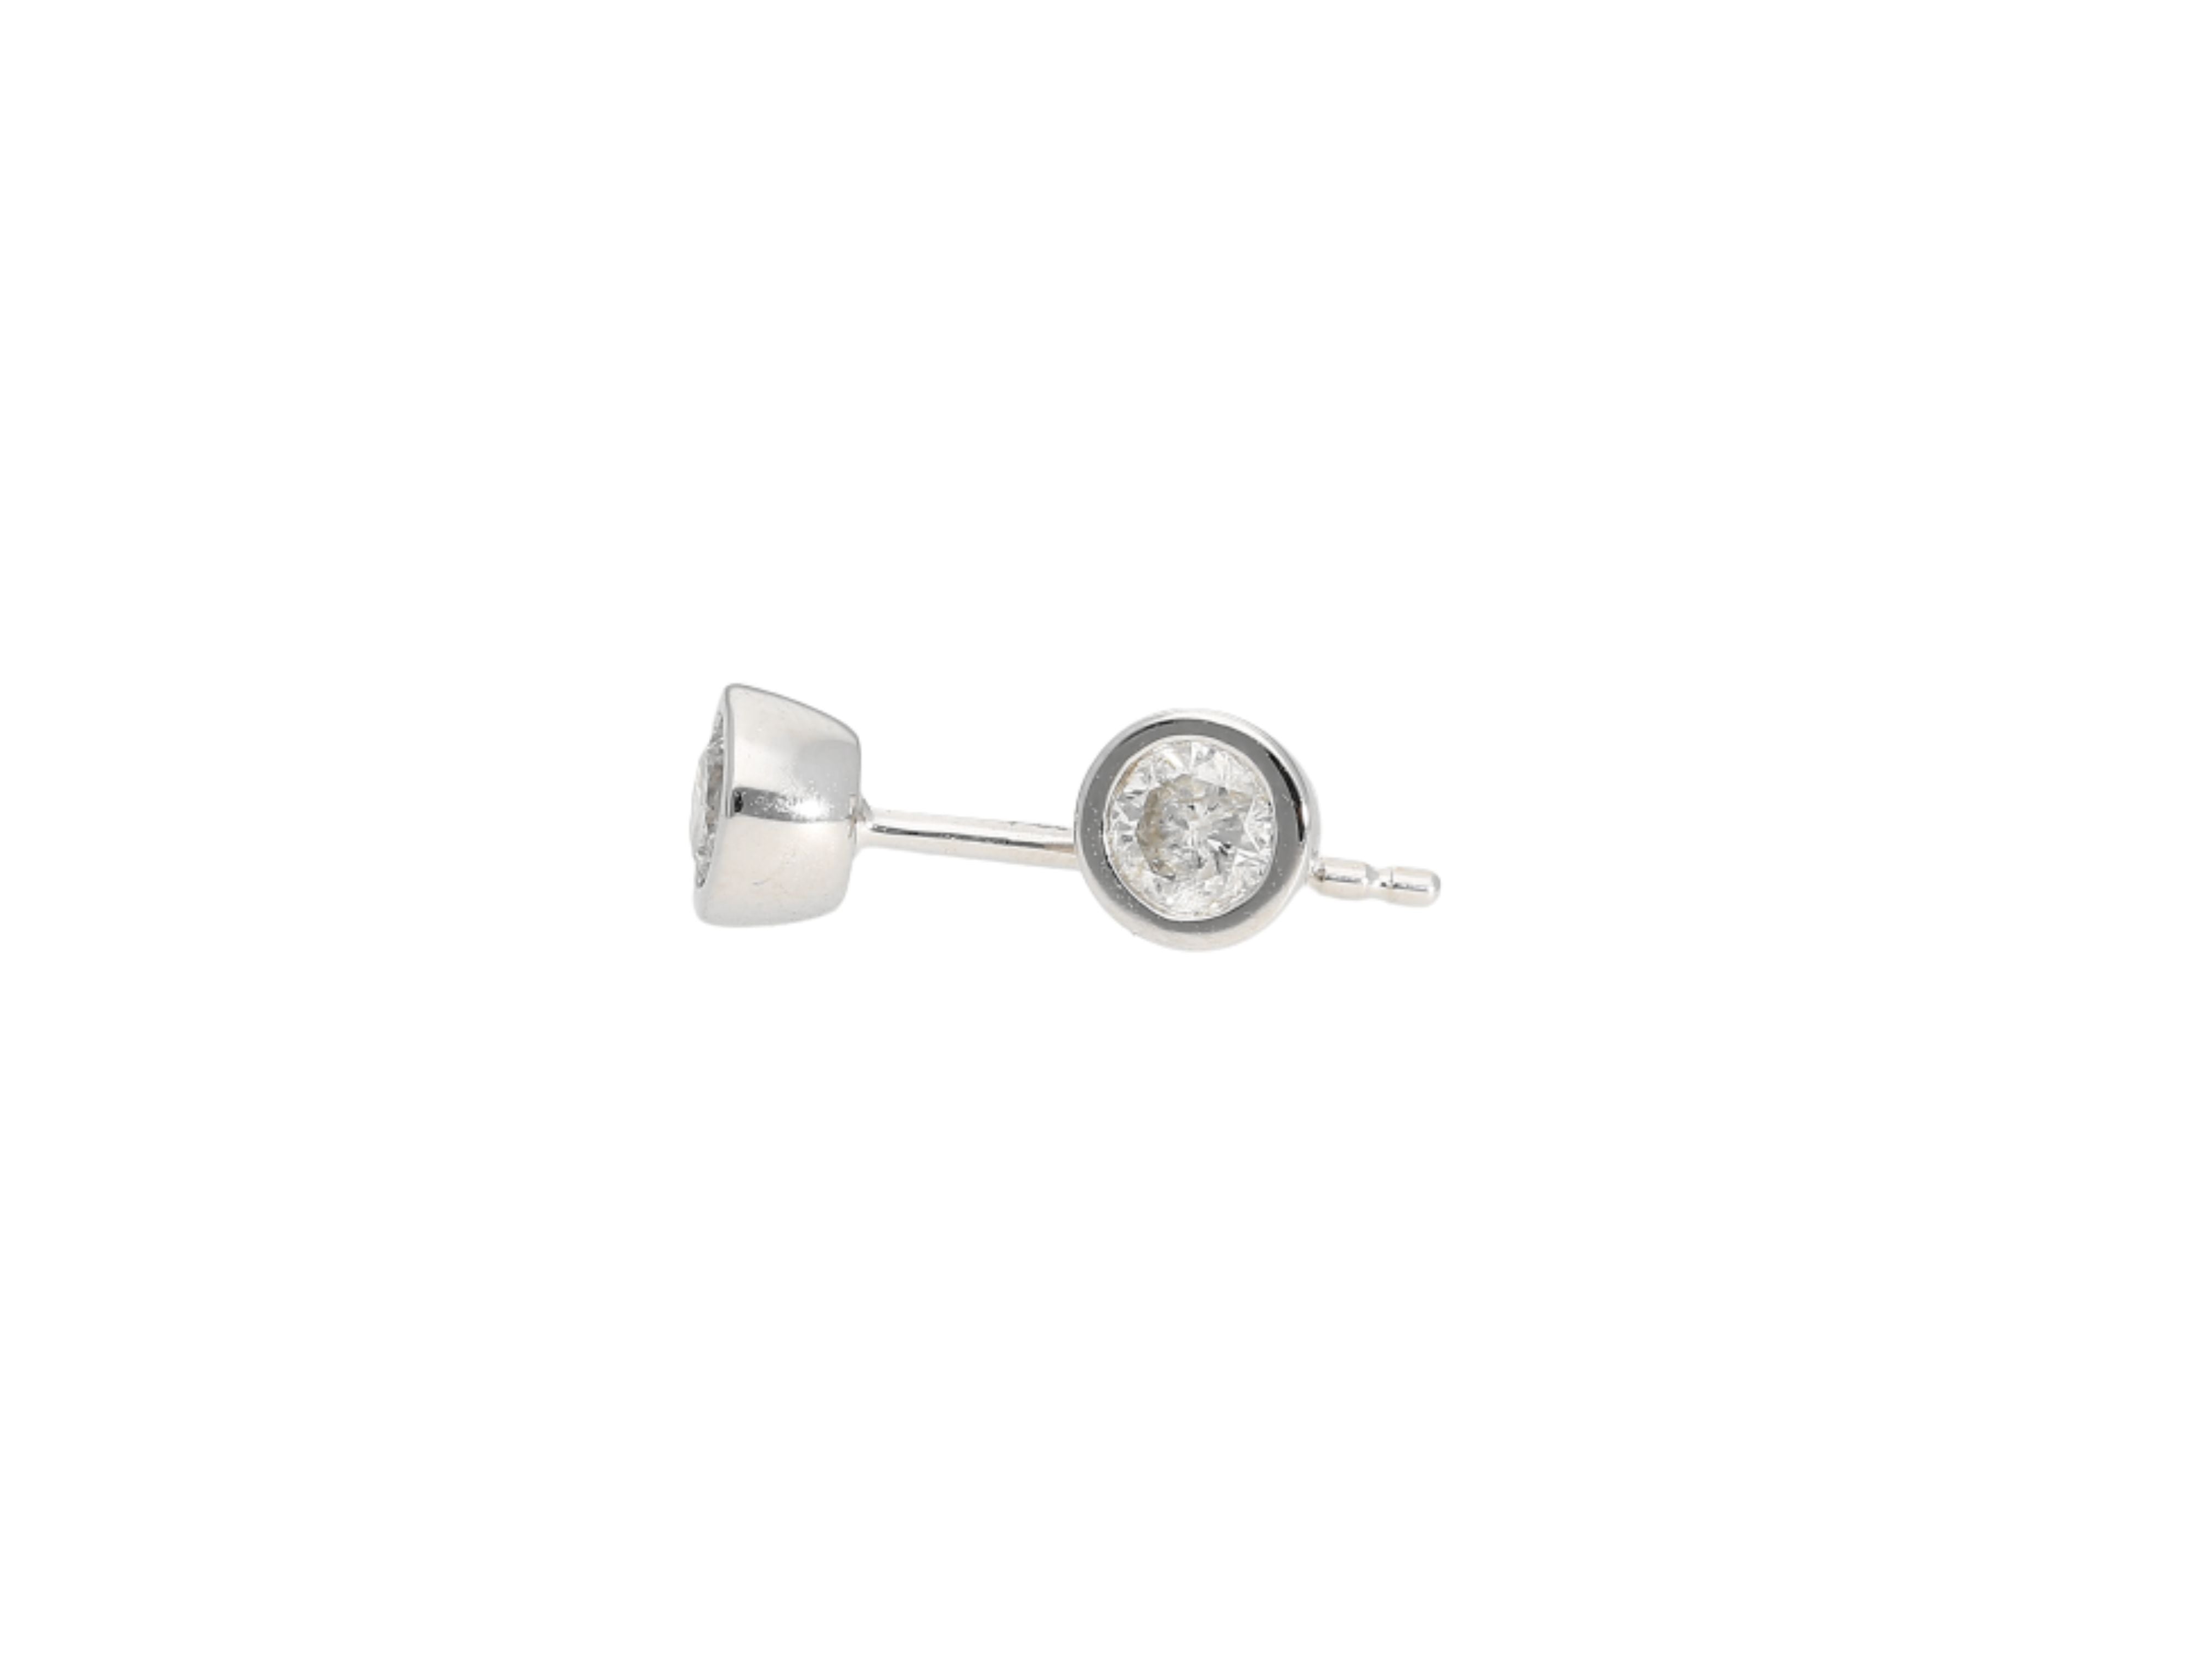 3 CTTW Bezel Set Natural Diamond Stud Earrings in 14k White Gold | 3.5 MM-Earrings-ASSAY